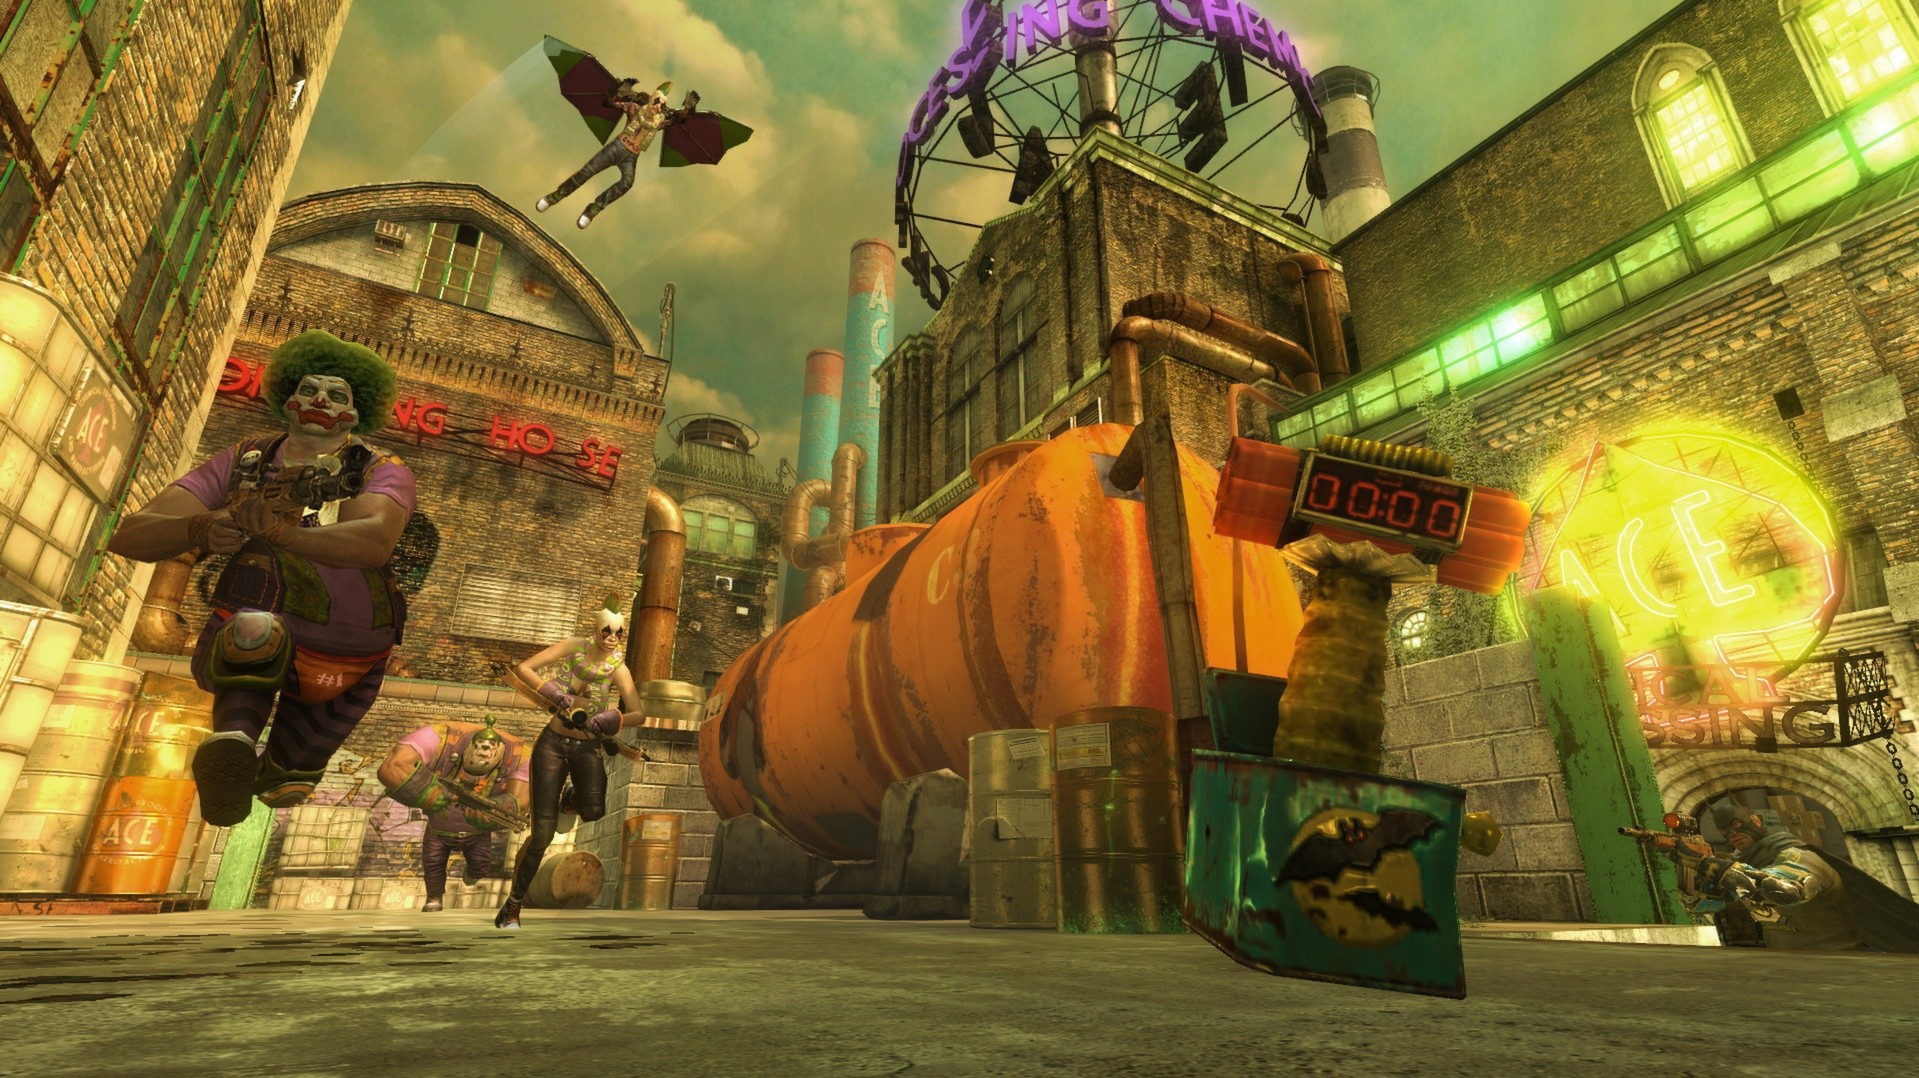 Gotham City Impostors é agora um free-to-play no Steam